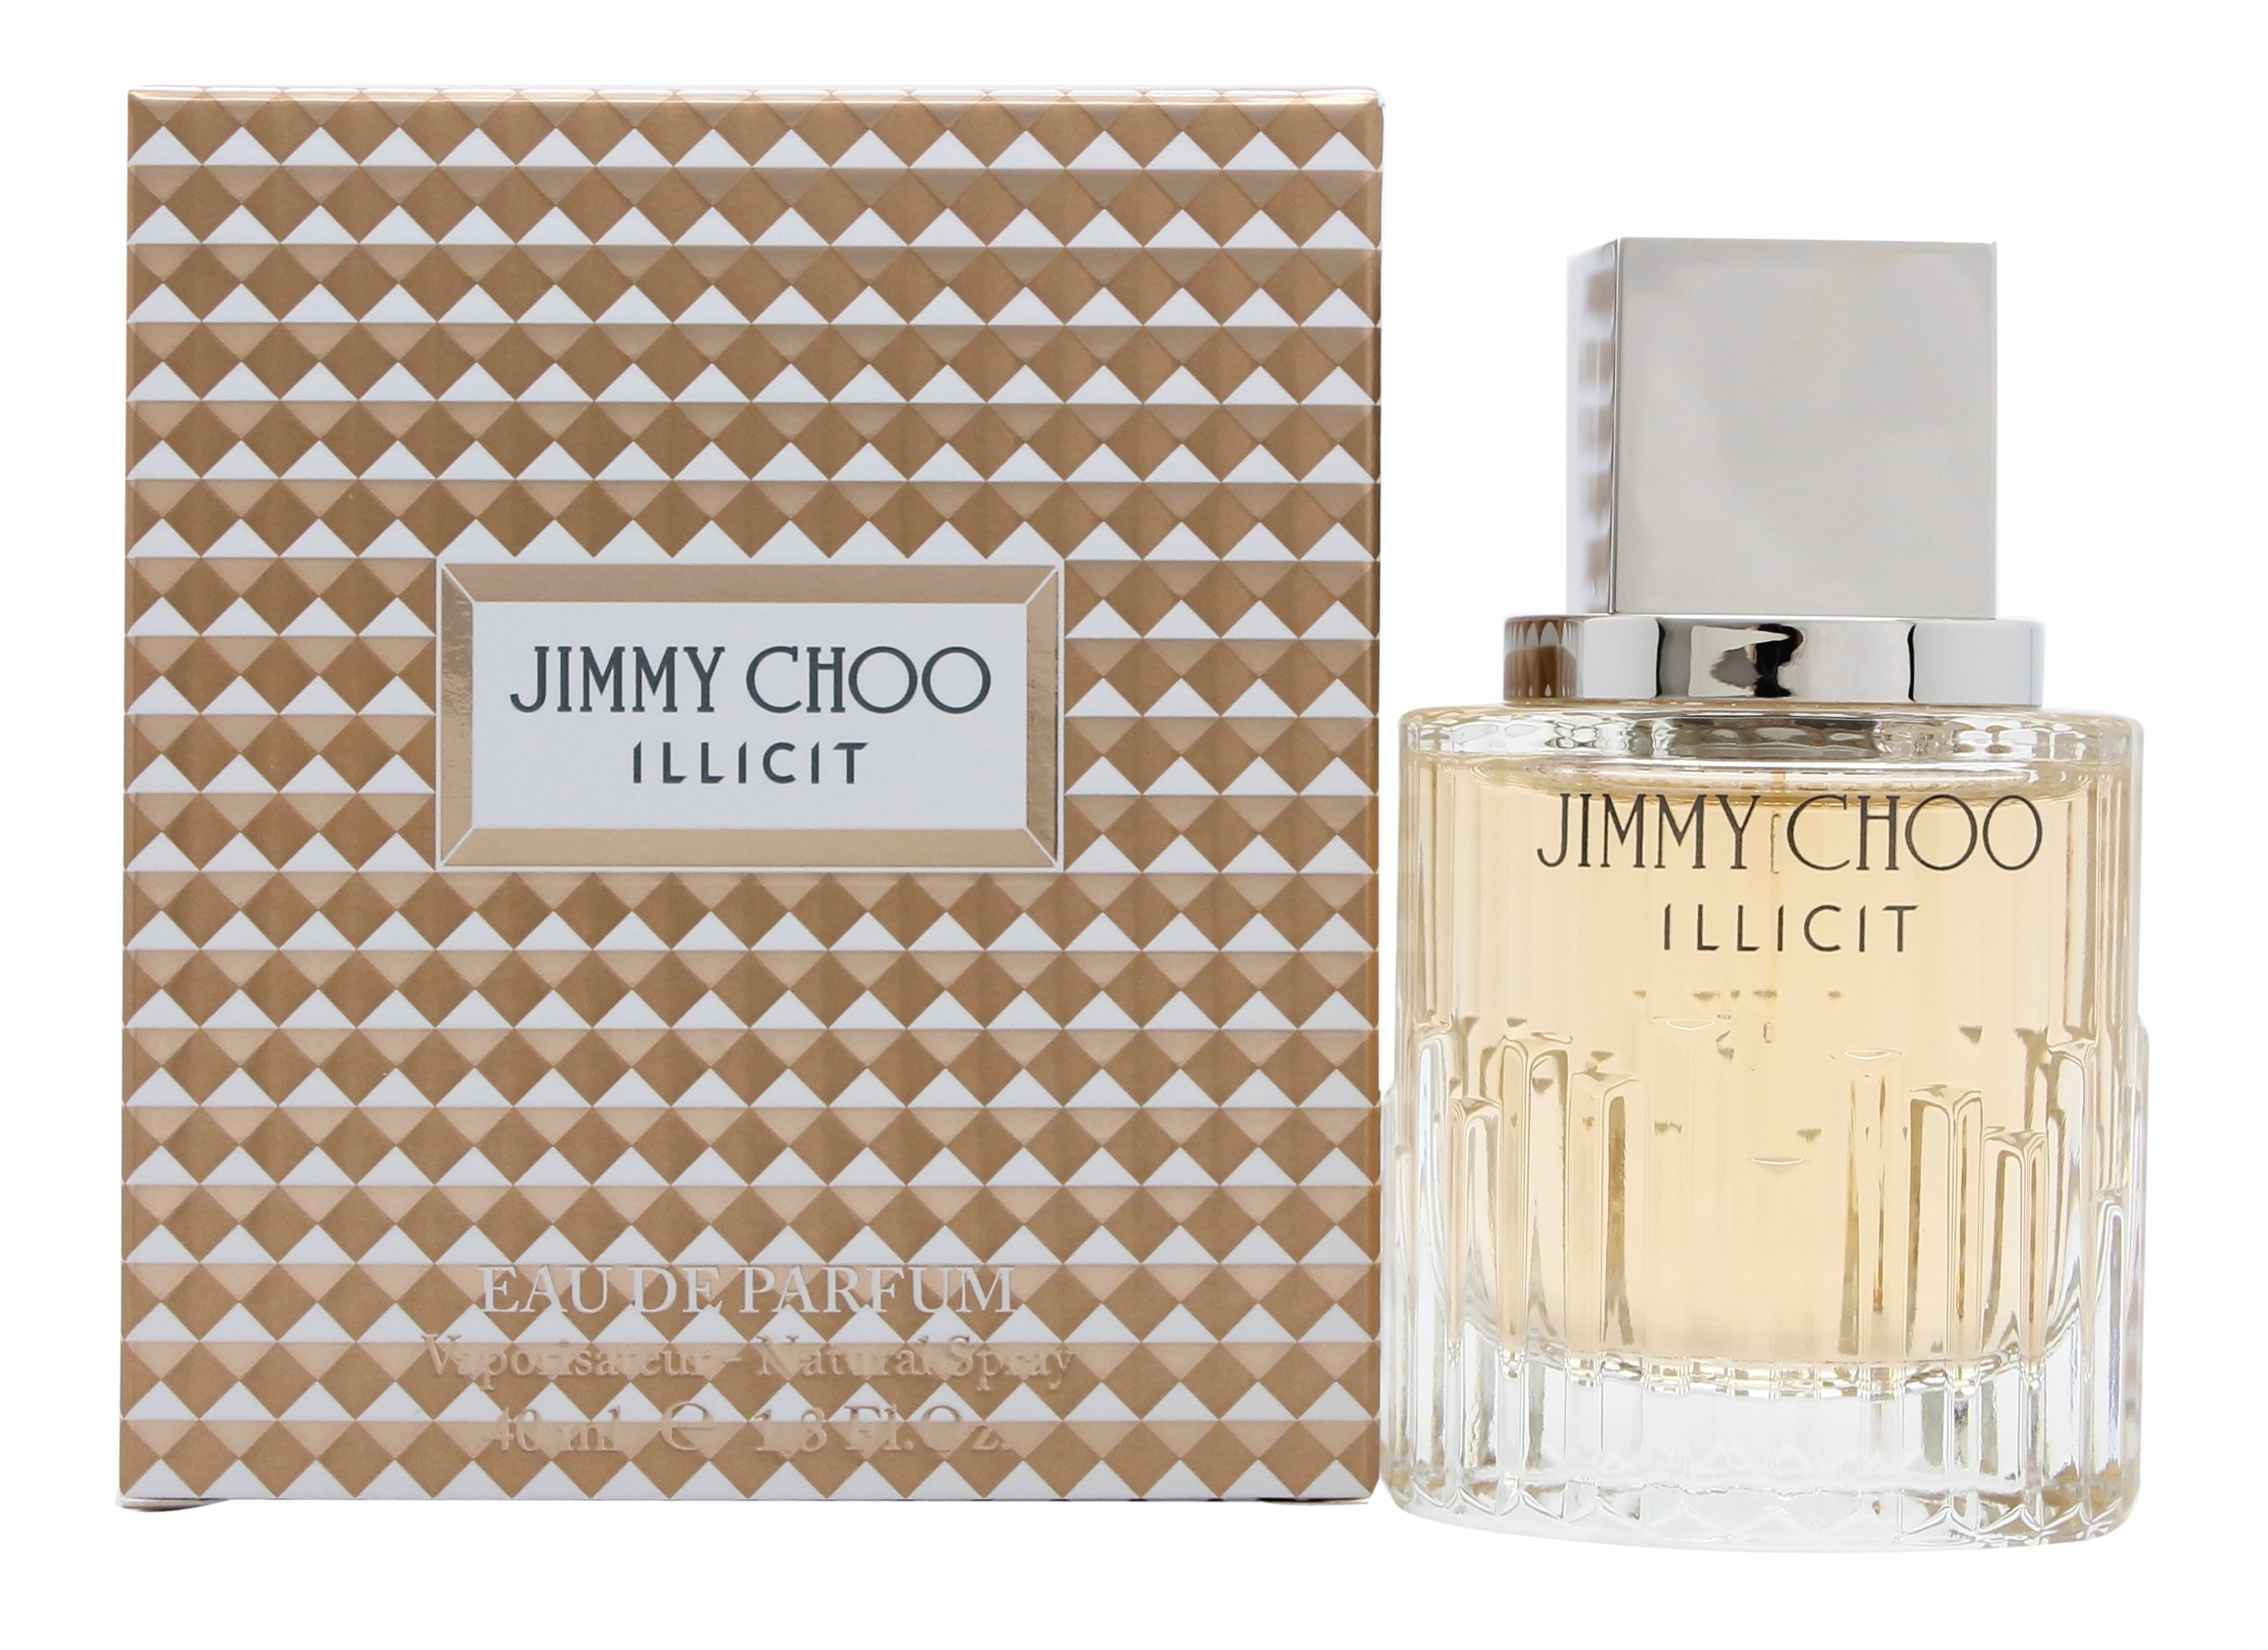 View Jimmy Choo Illicit Eau de Parfum 40ml Spray information